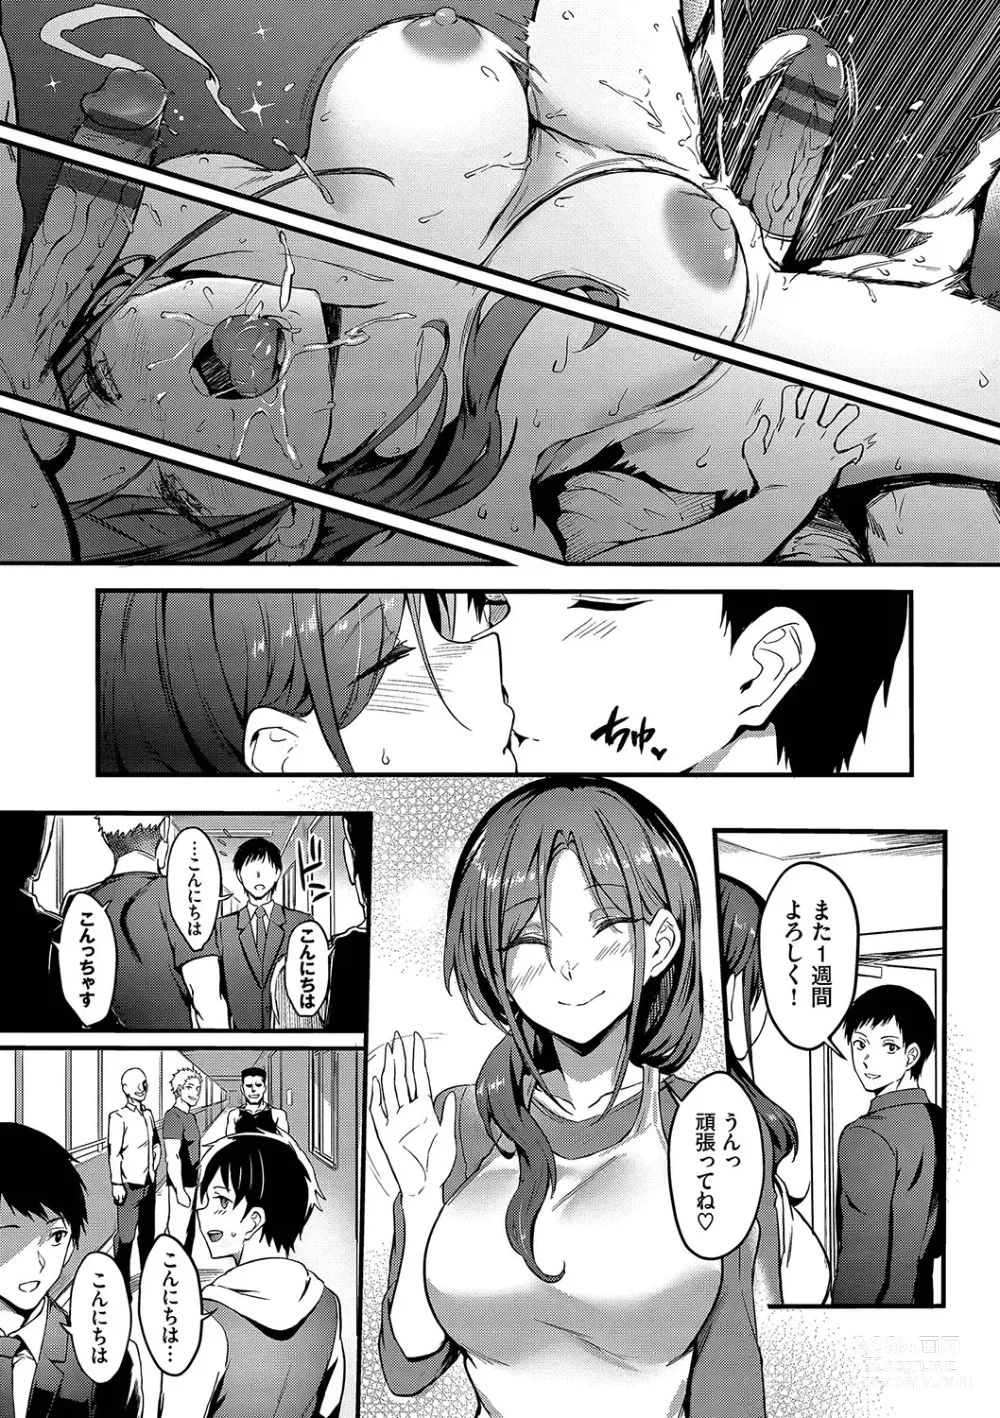 Page 192 of manga Bitch Bitch